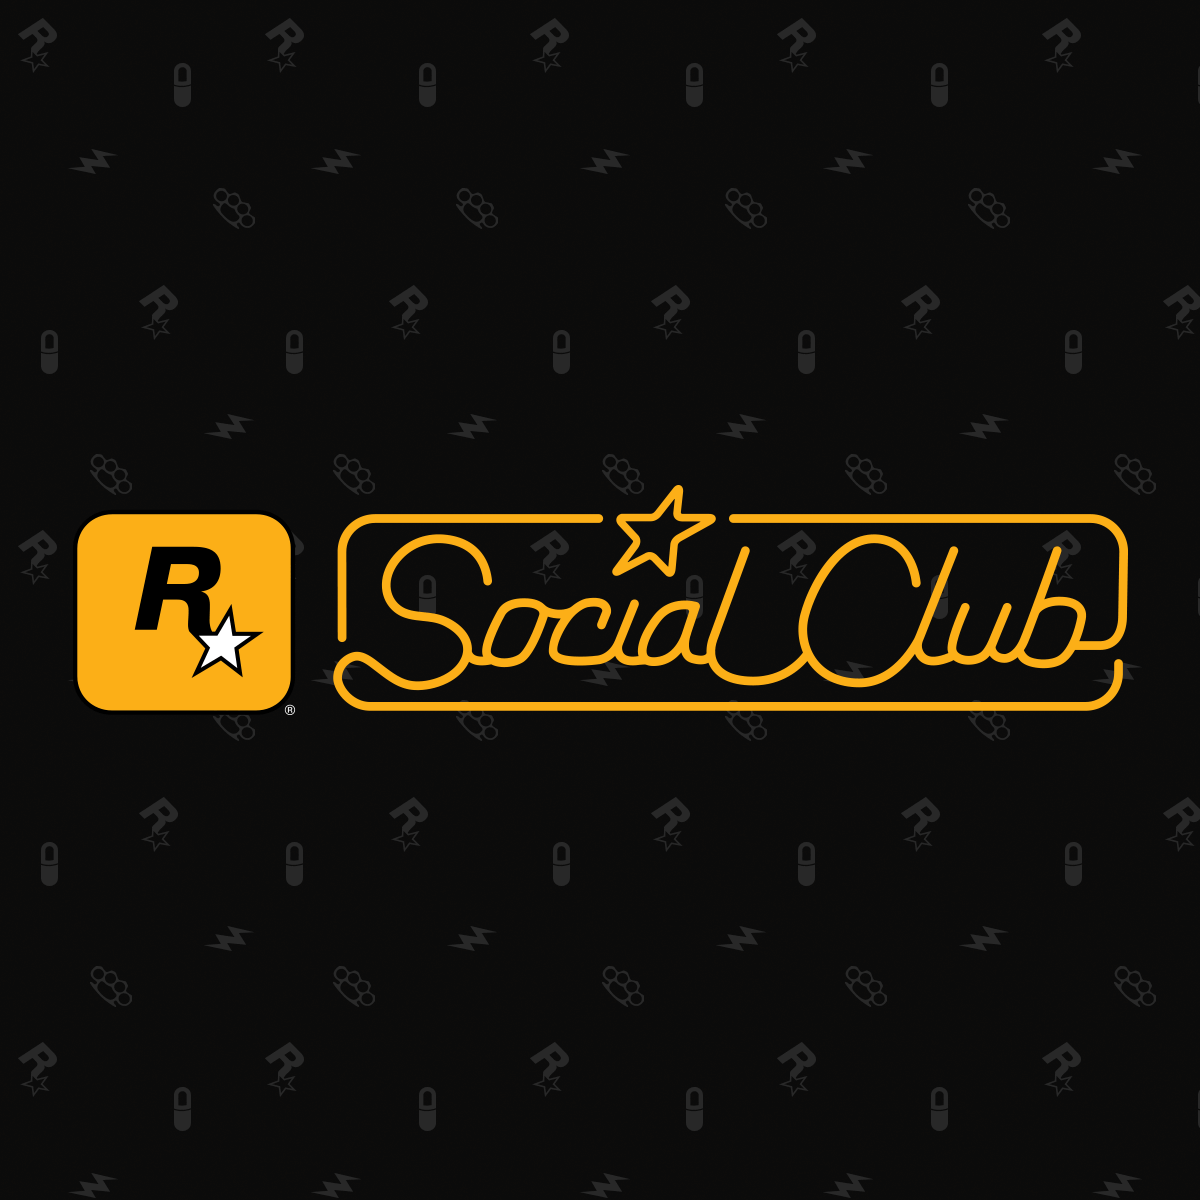 Известная компания Rockstar Games решила удалить брендинг Social Club со своего сайта, что вызвало предположения о готовящемся выпуске трейлера игры GTA 6.-2